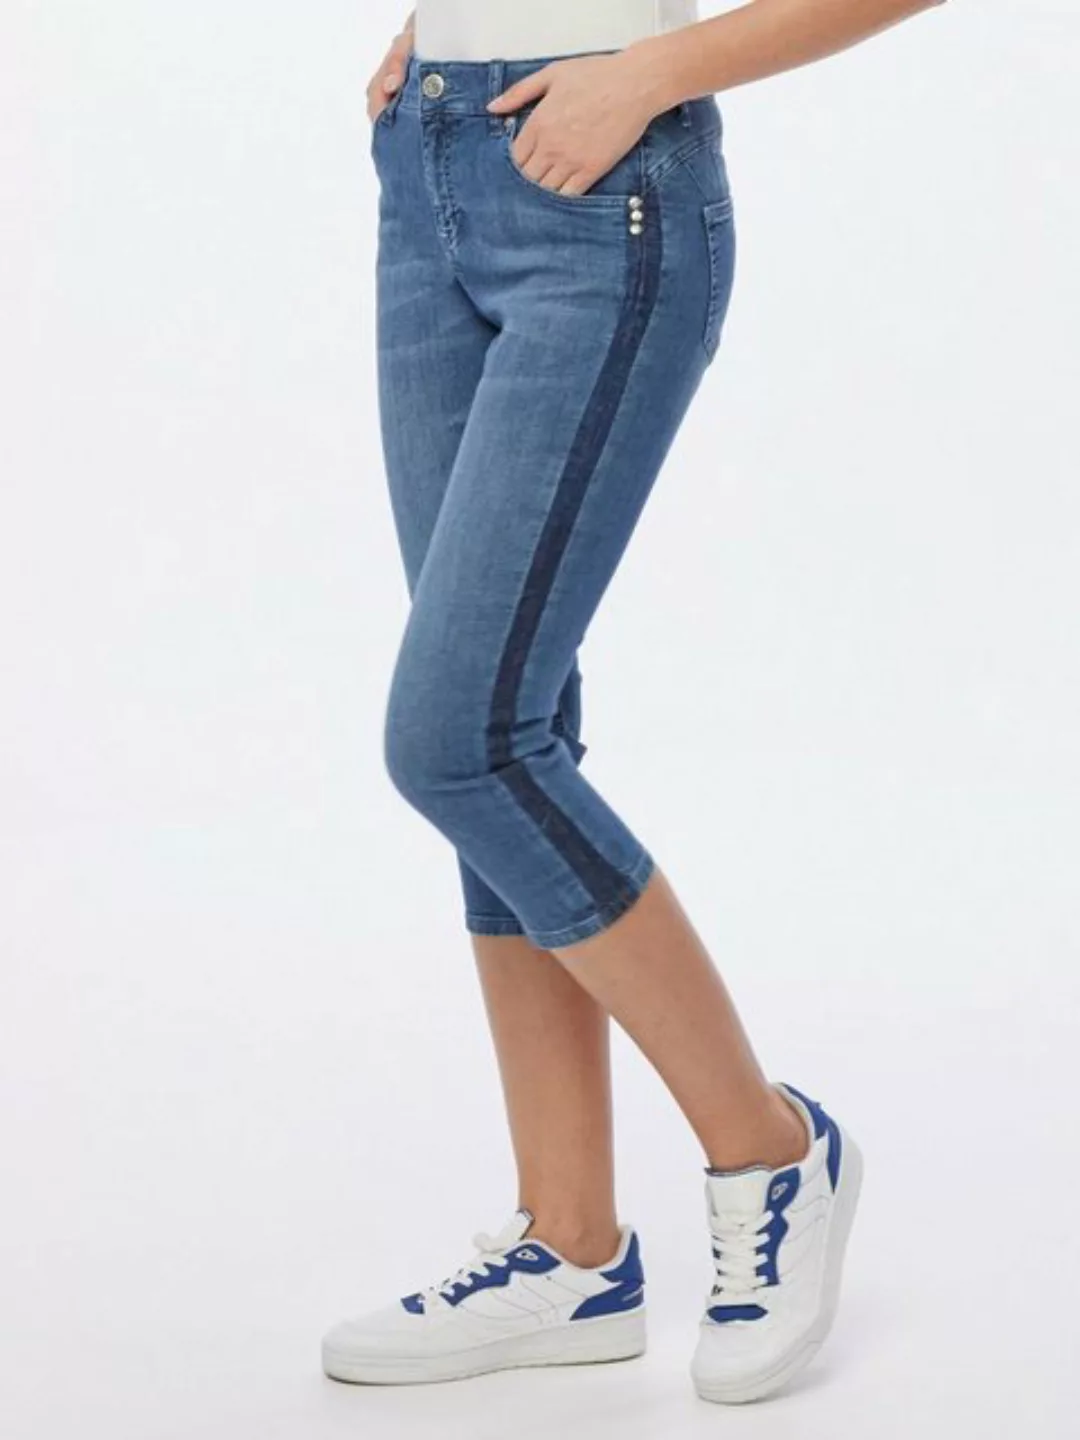 Christian Materne Caprijeans 3/4-Jeans figurbetont im Five-Pocket Design günstig online kaufen